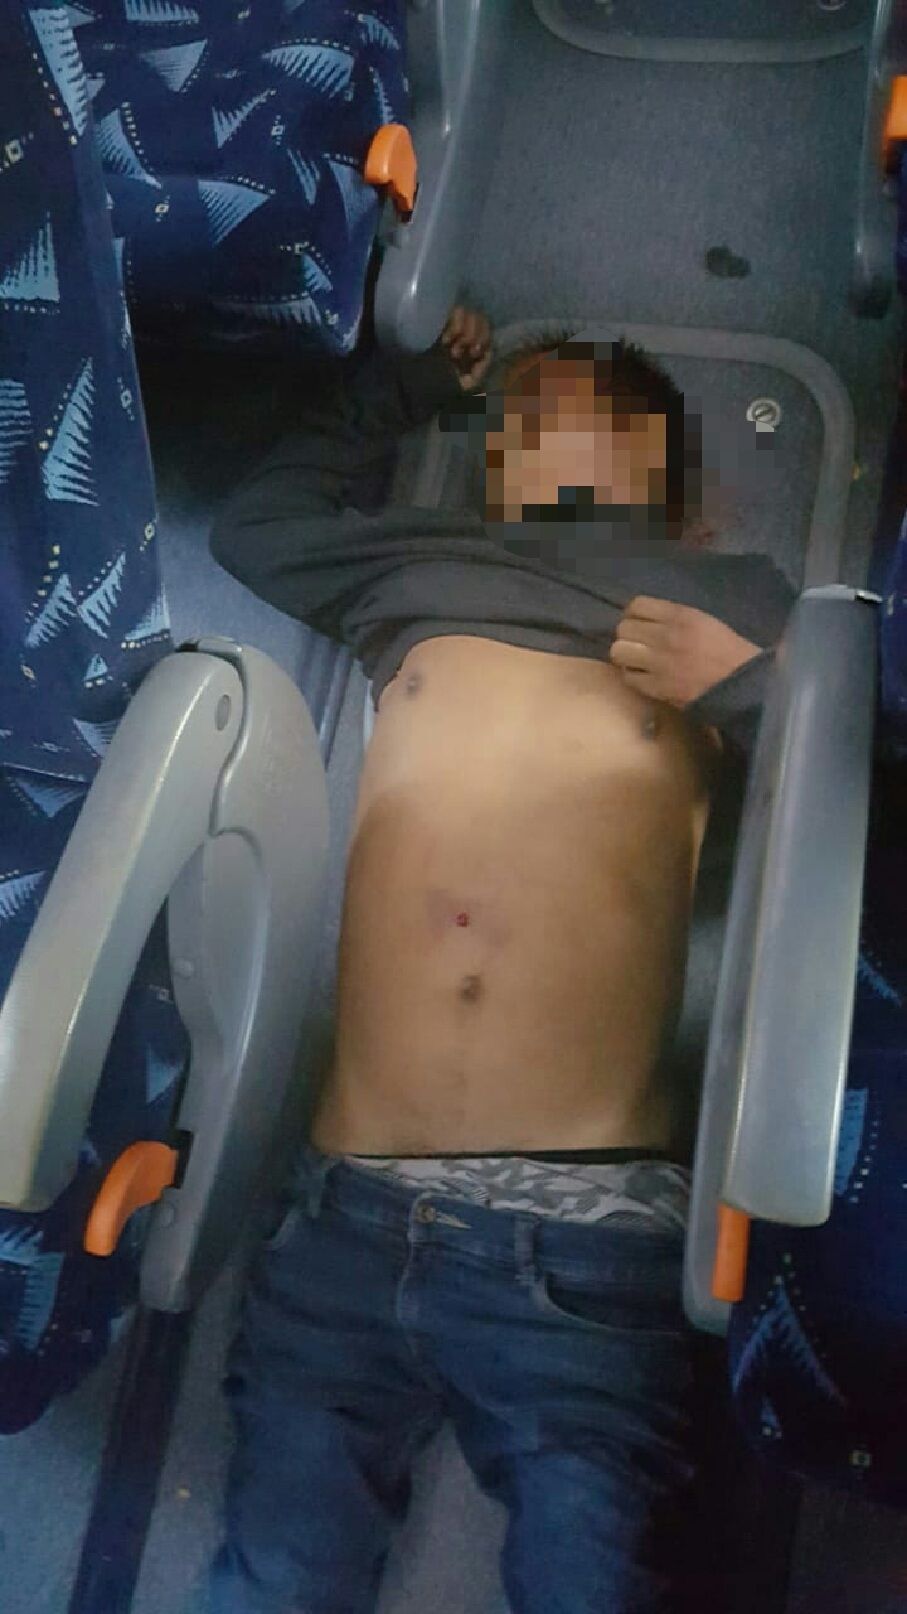 
Asaltante muerto en un autobús en la México